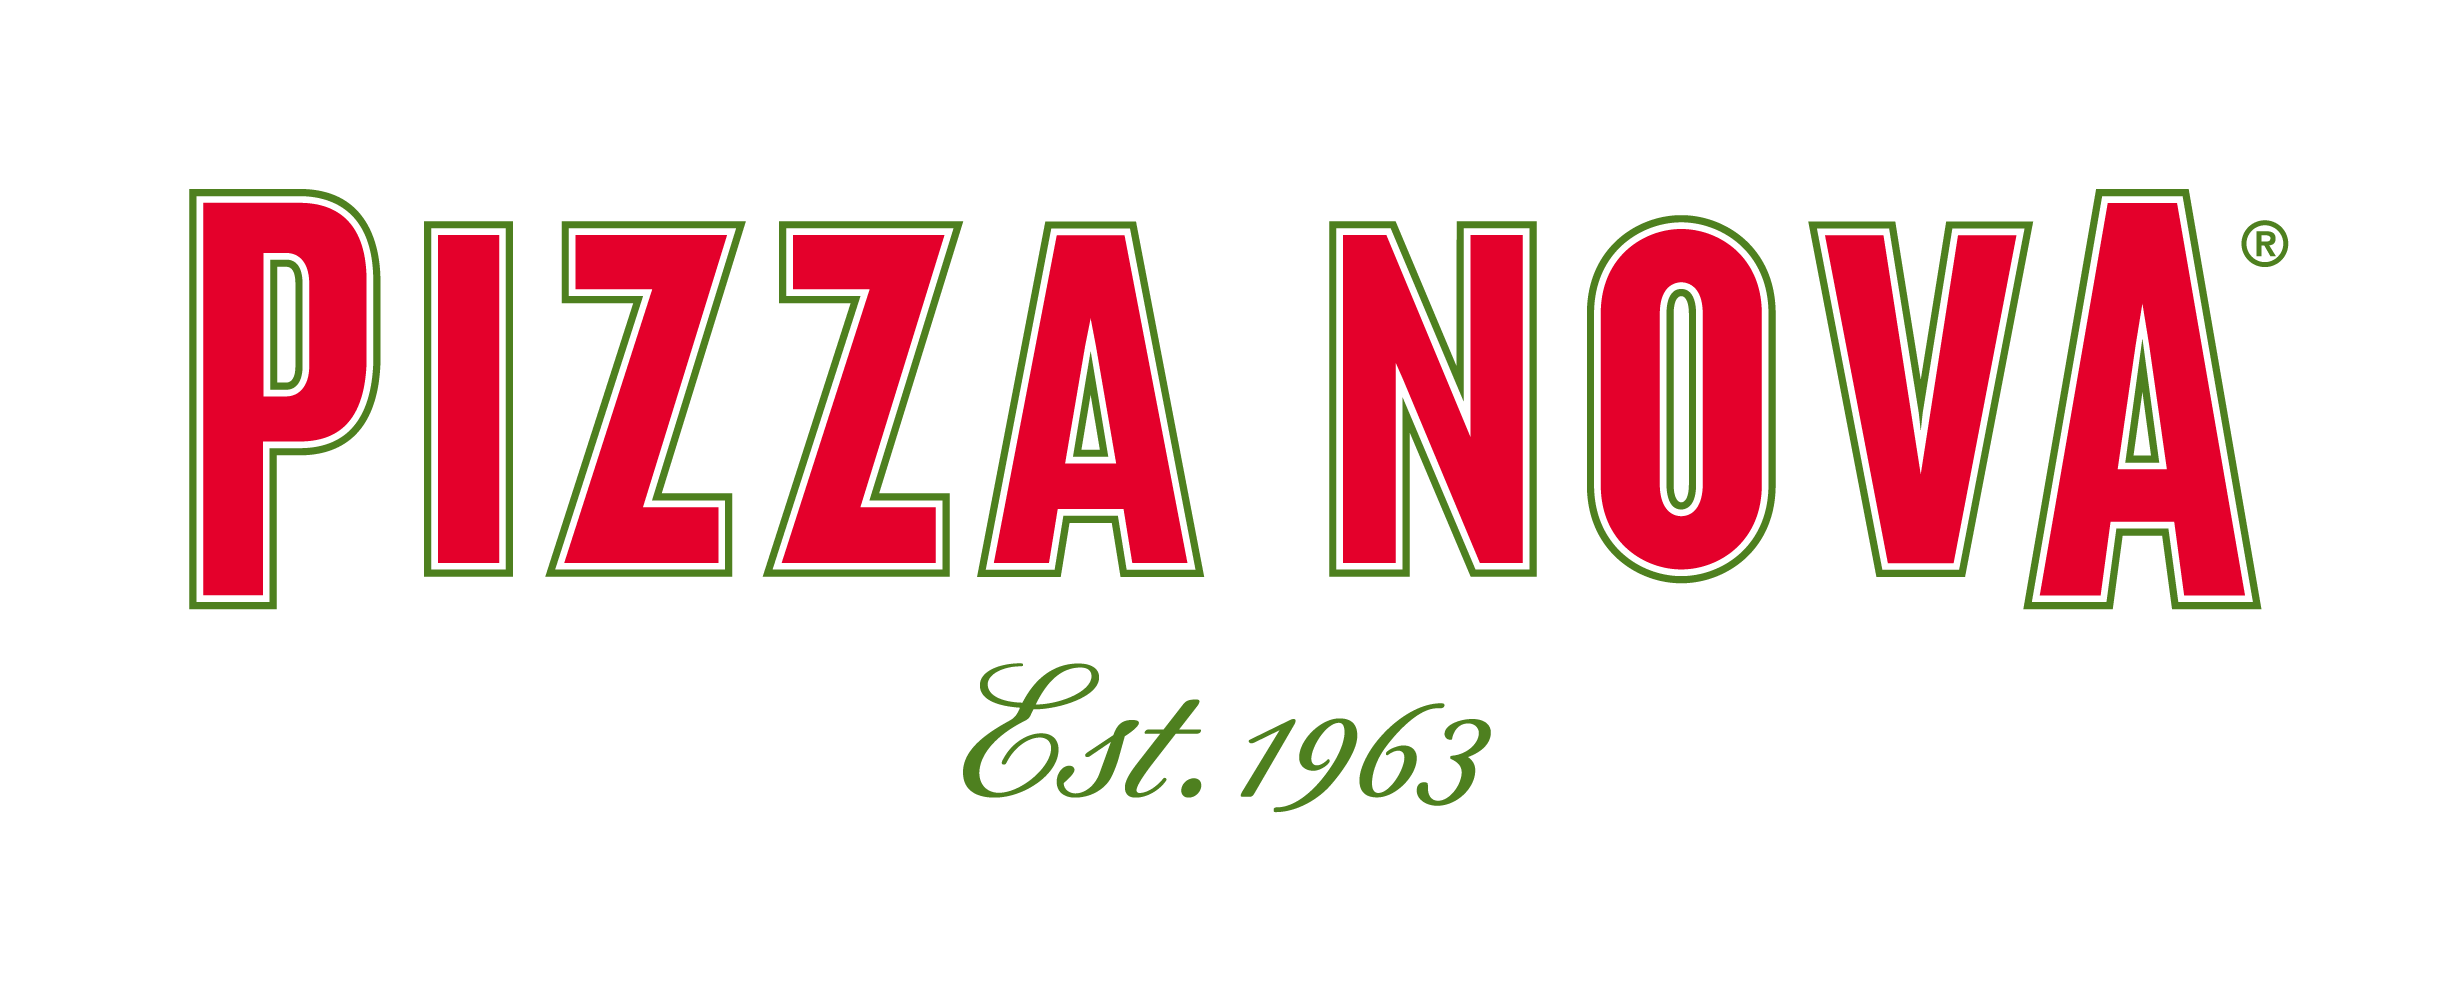 Pizza Nova 